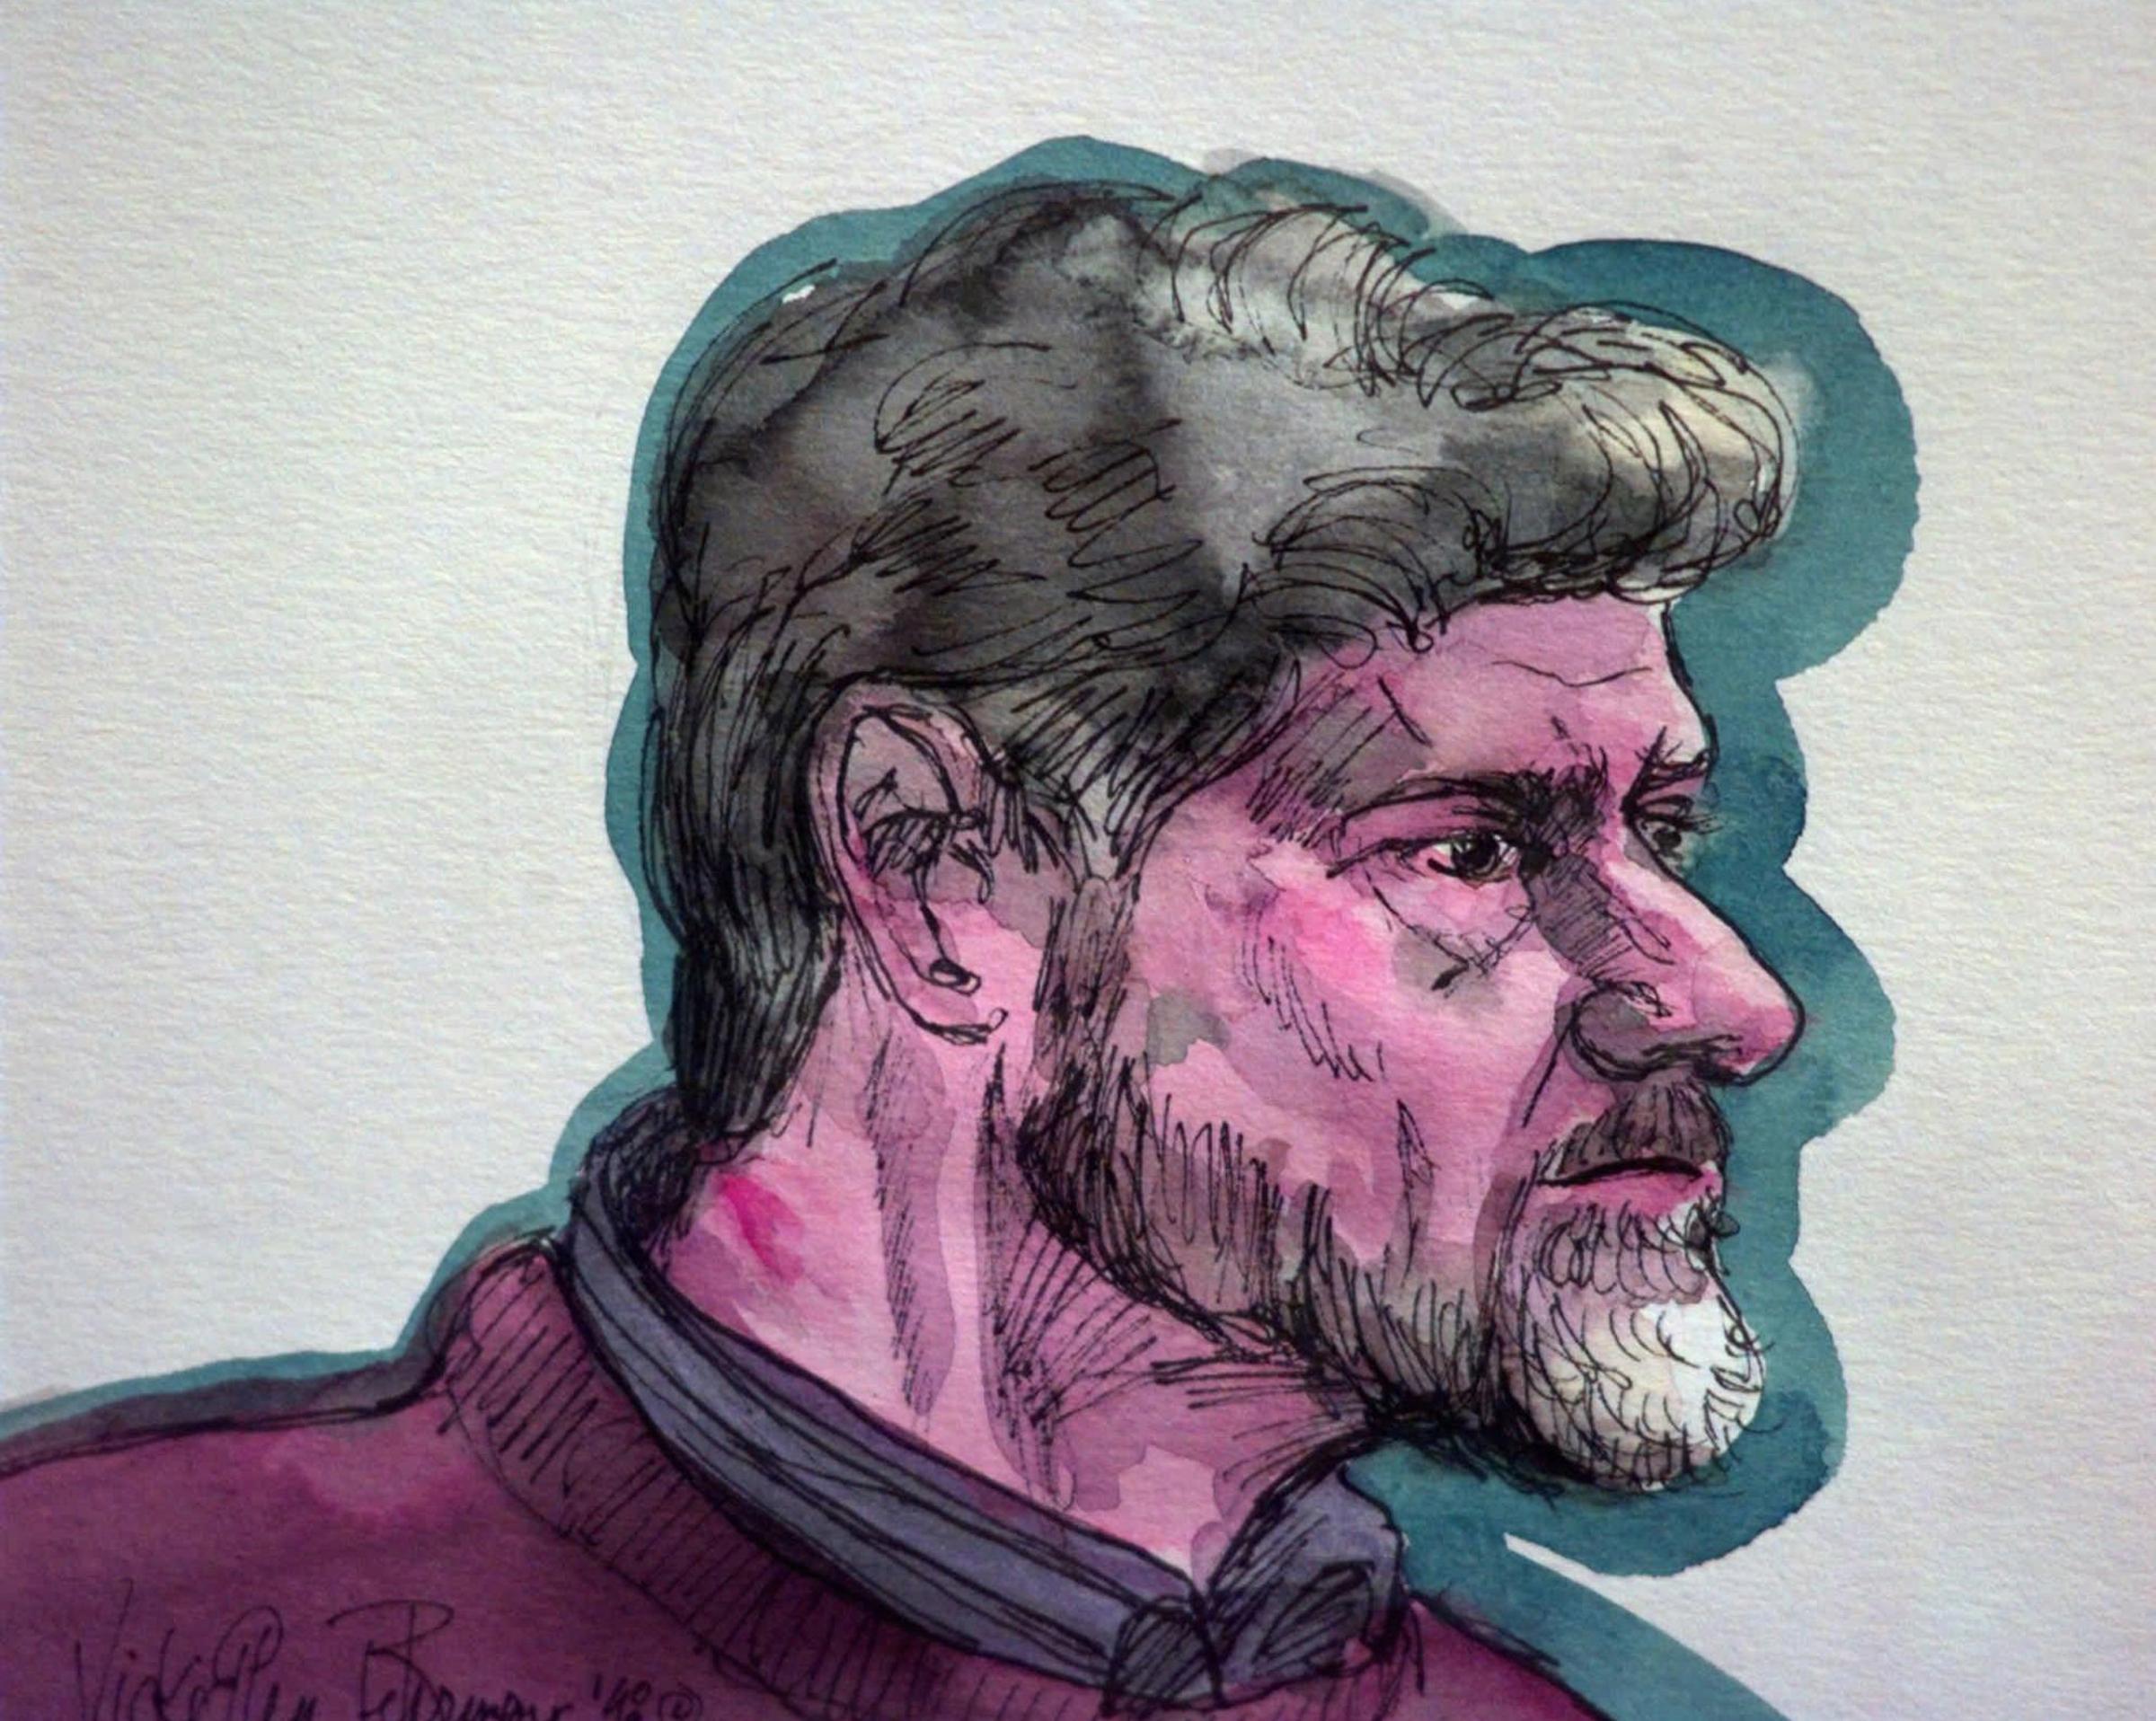 Unabomber Ted Kaczynski Trial